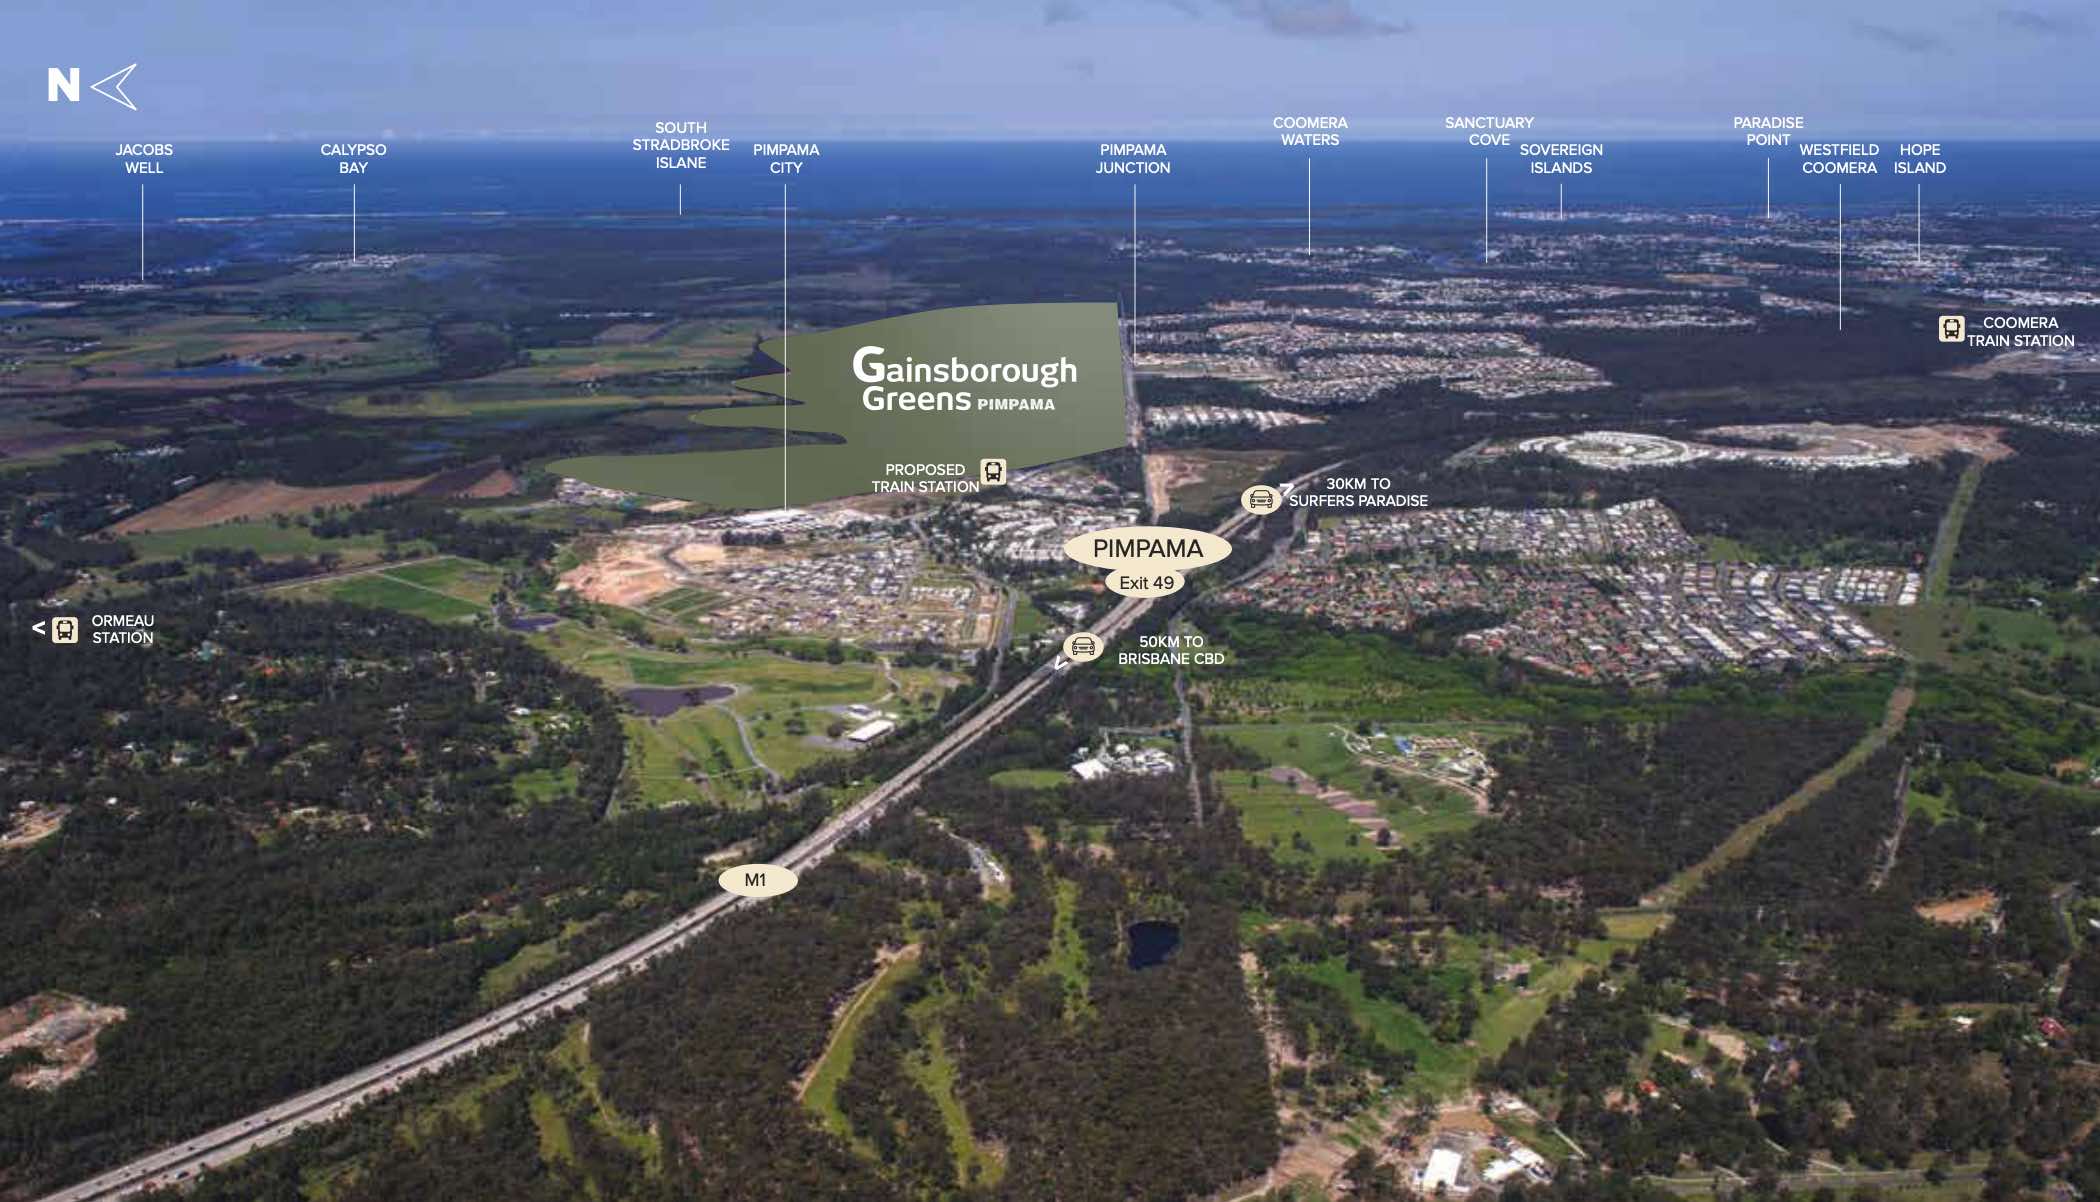 Gainsborough Greens Estate - Pimpama Aerial